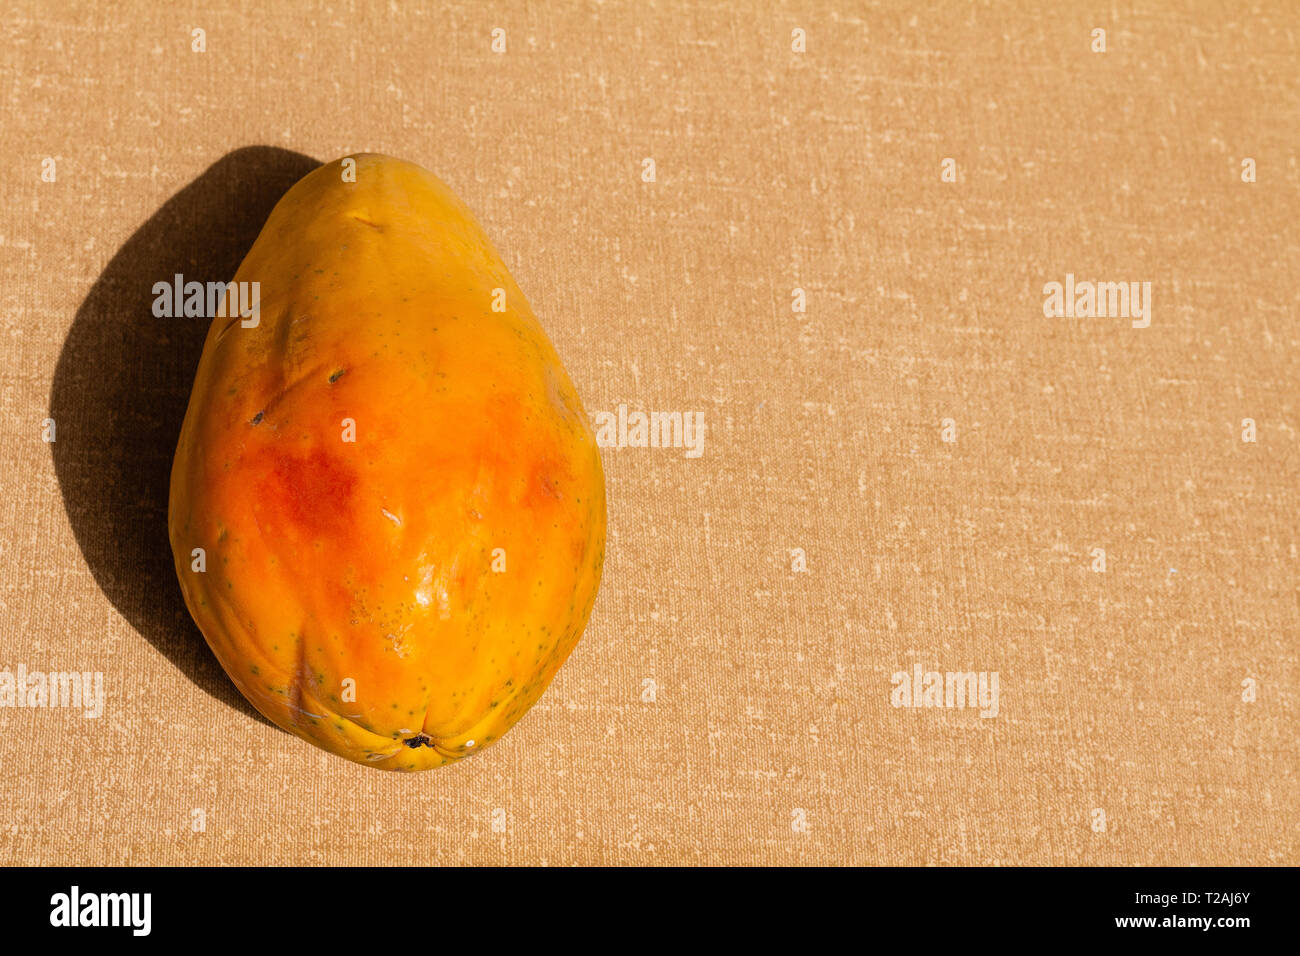 Papaya fruit with textured background. Stock Photo